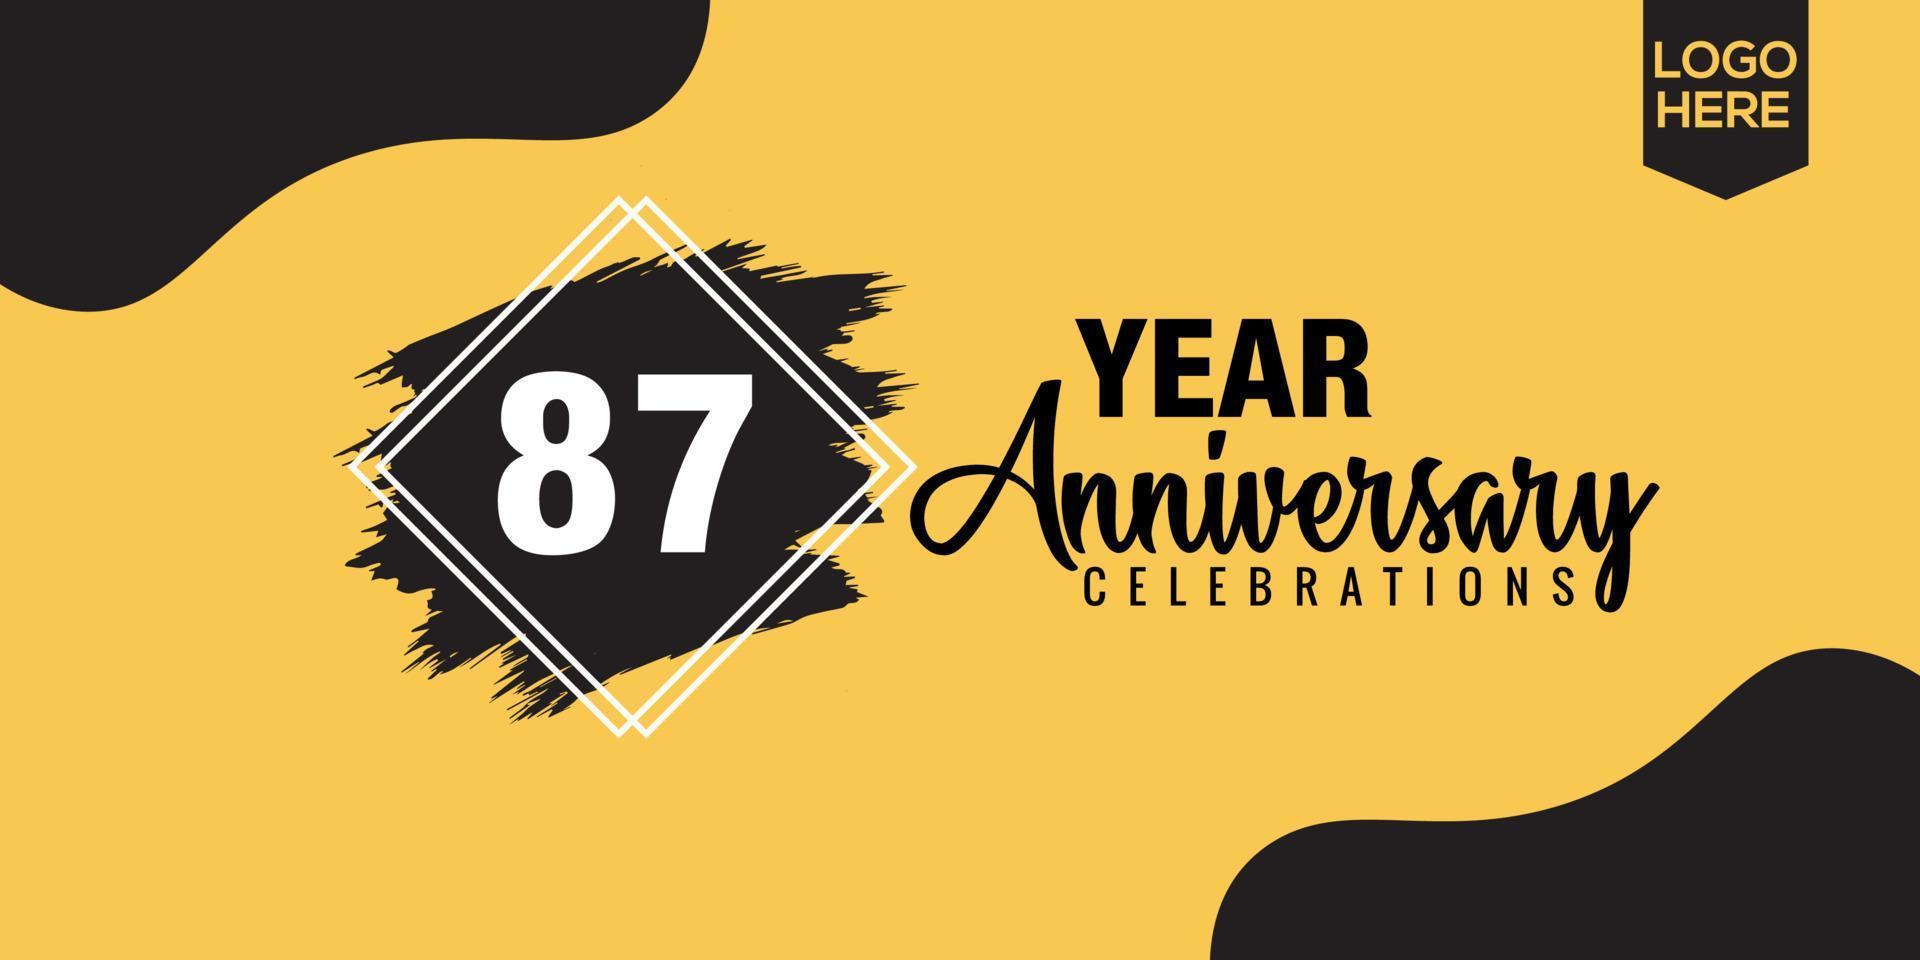 87th anni anniversario celebrazione logo design con nero spazzola e giallo colore con nero astratto vettore illustrazione